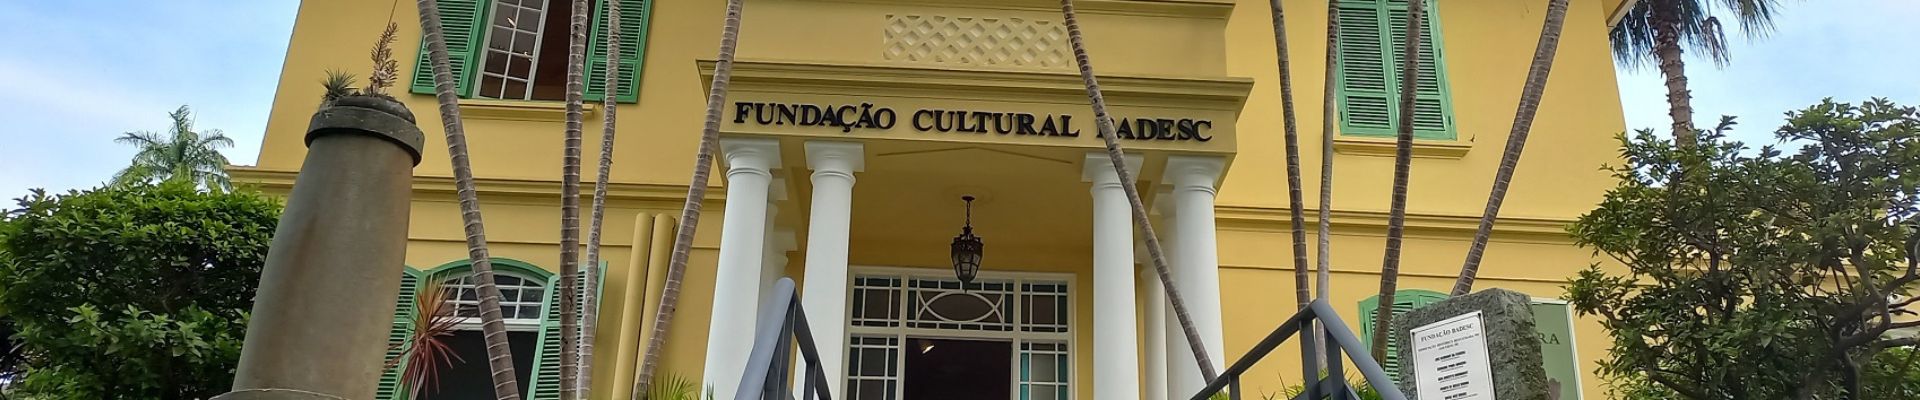 Chamada Pública: Conheça os projetos selecionados da Fundação Cultural BADESC